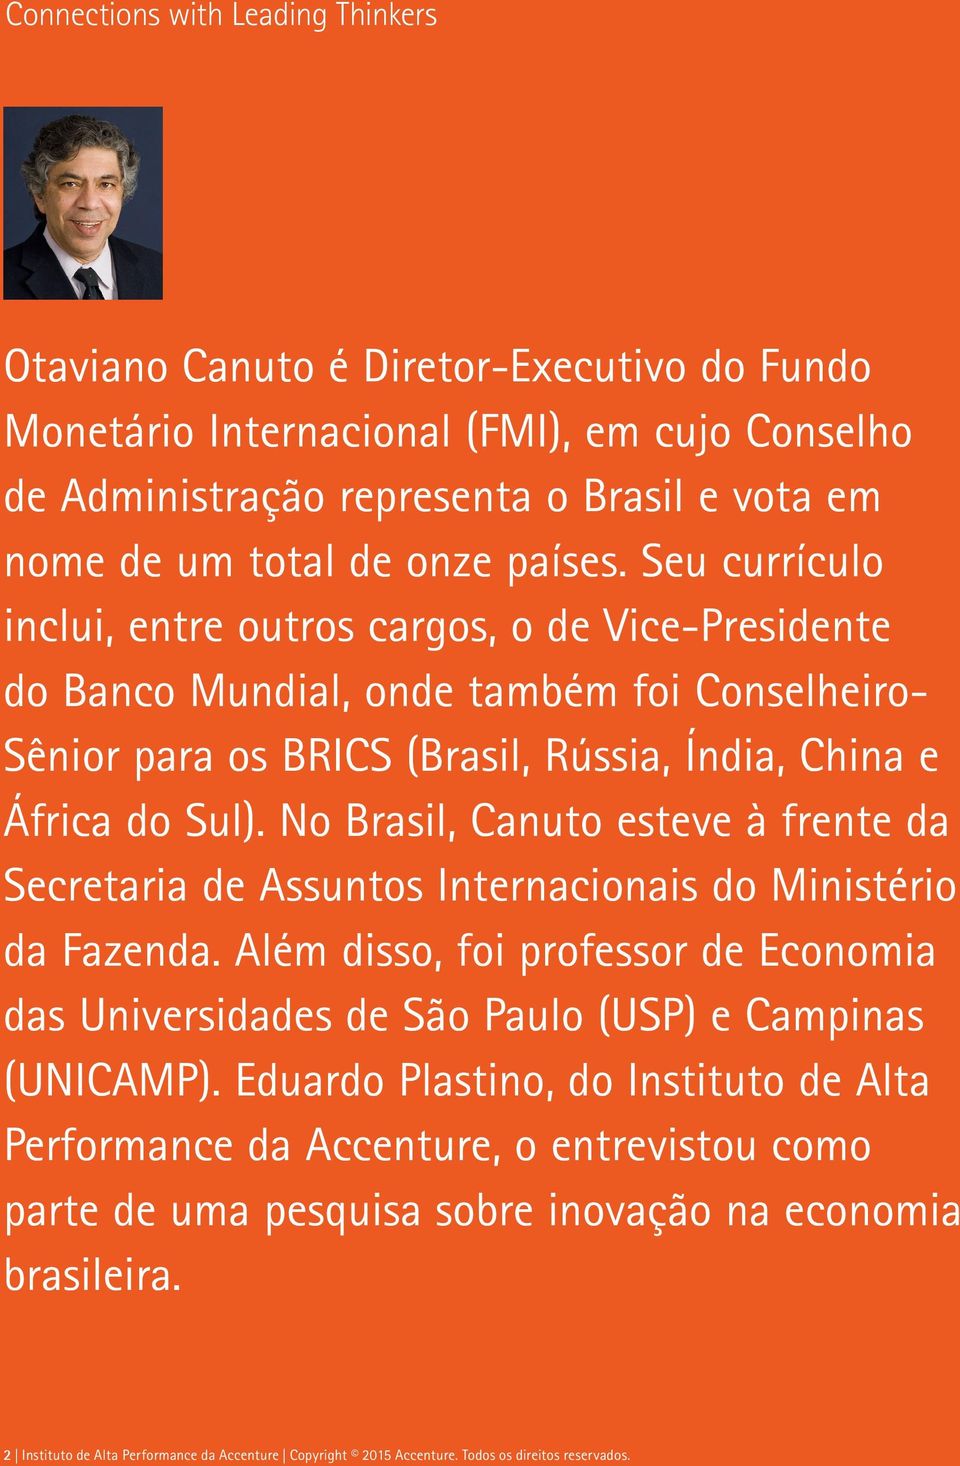 No Brasil, Canuto esteve à frente da Secretaria de Assuntos Internacionais do Ministério da Fazenda. Além disso, foi professor de Economia das Universidades de São Paulo (USP) e Campinas (UNICAMP).